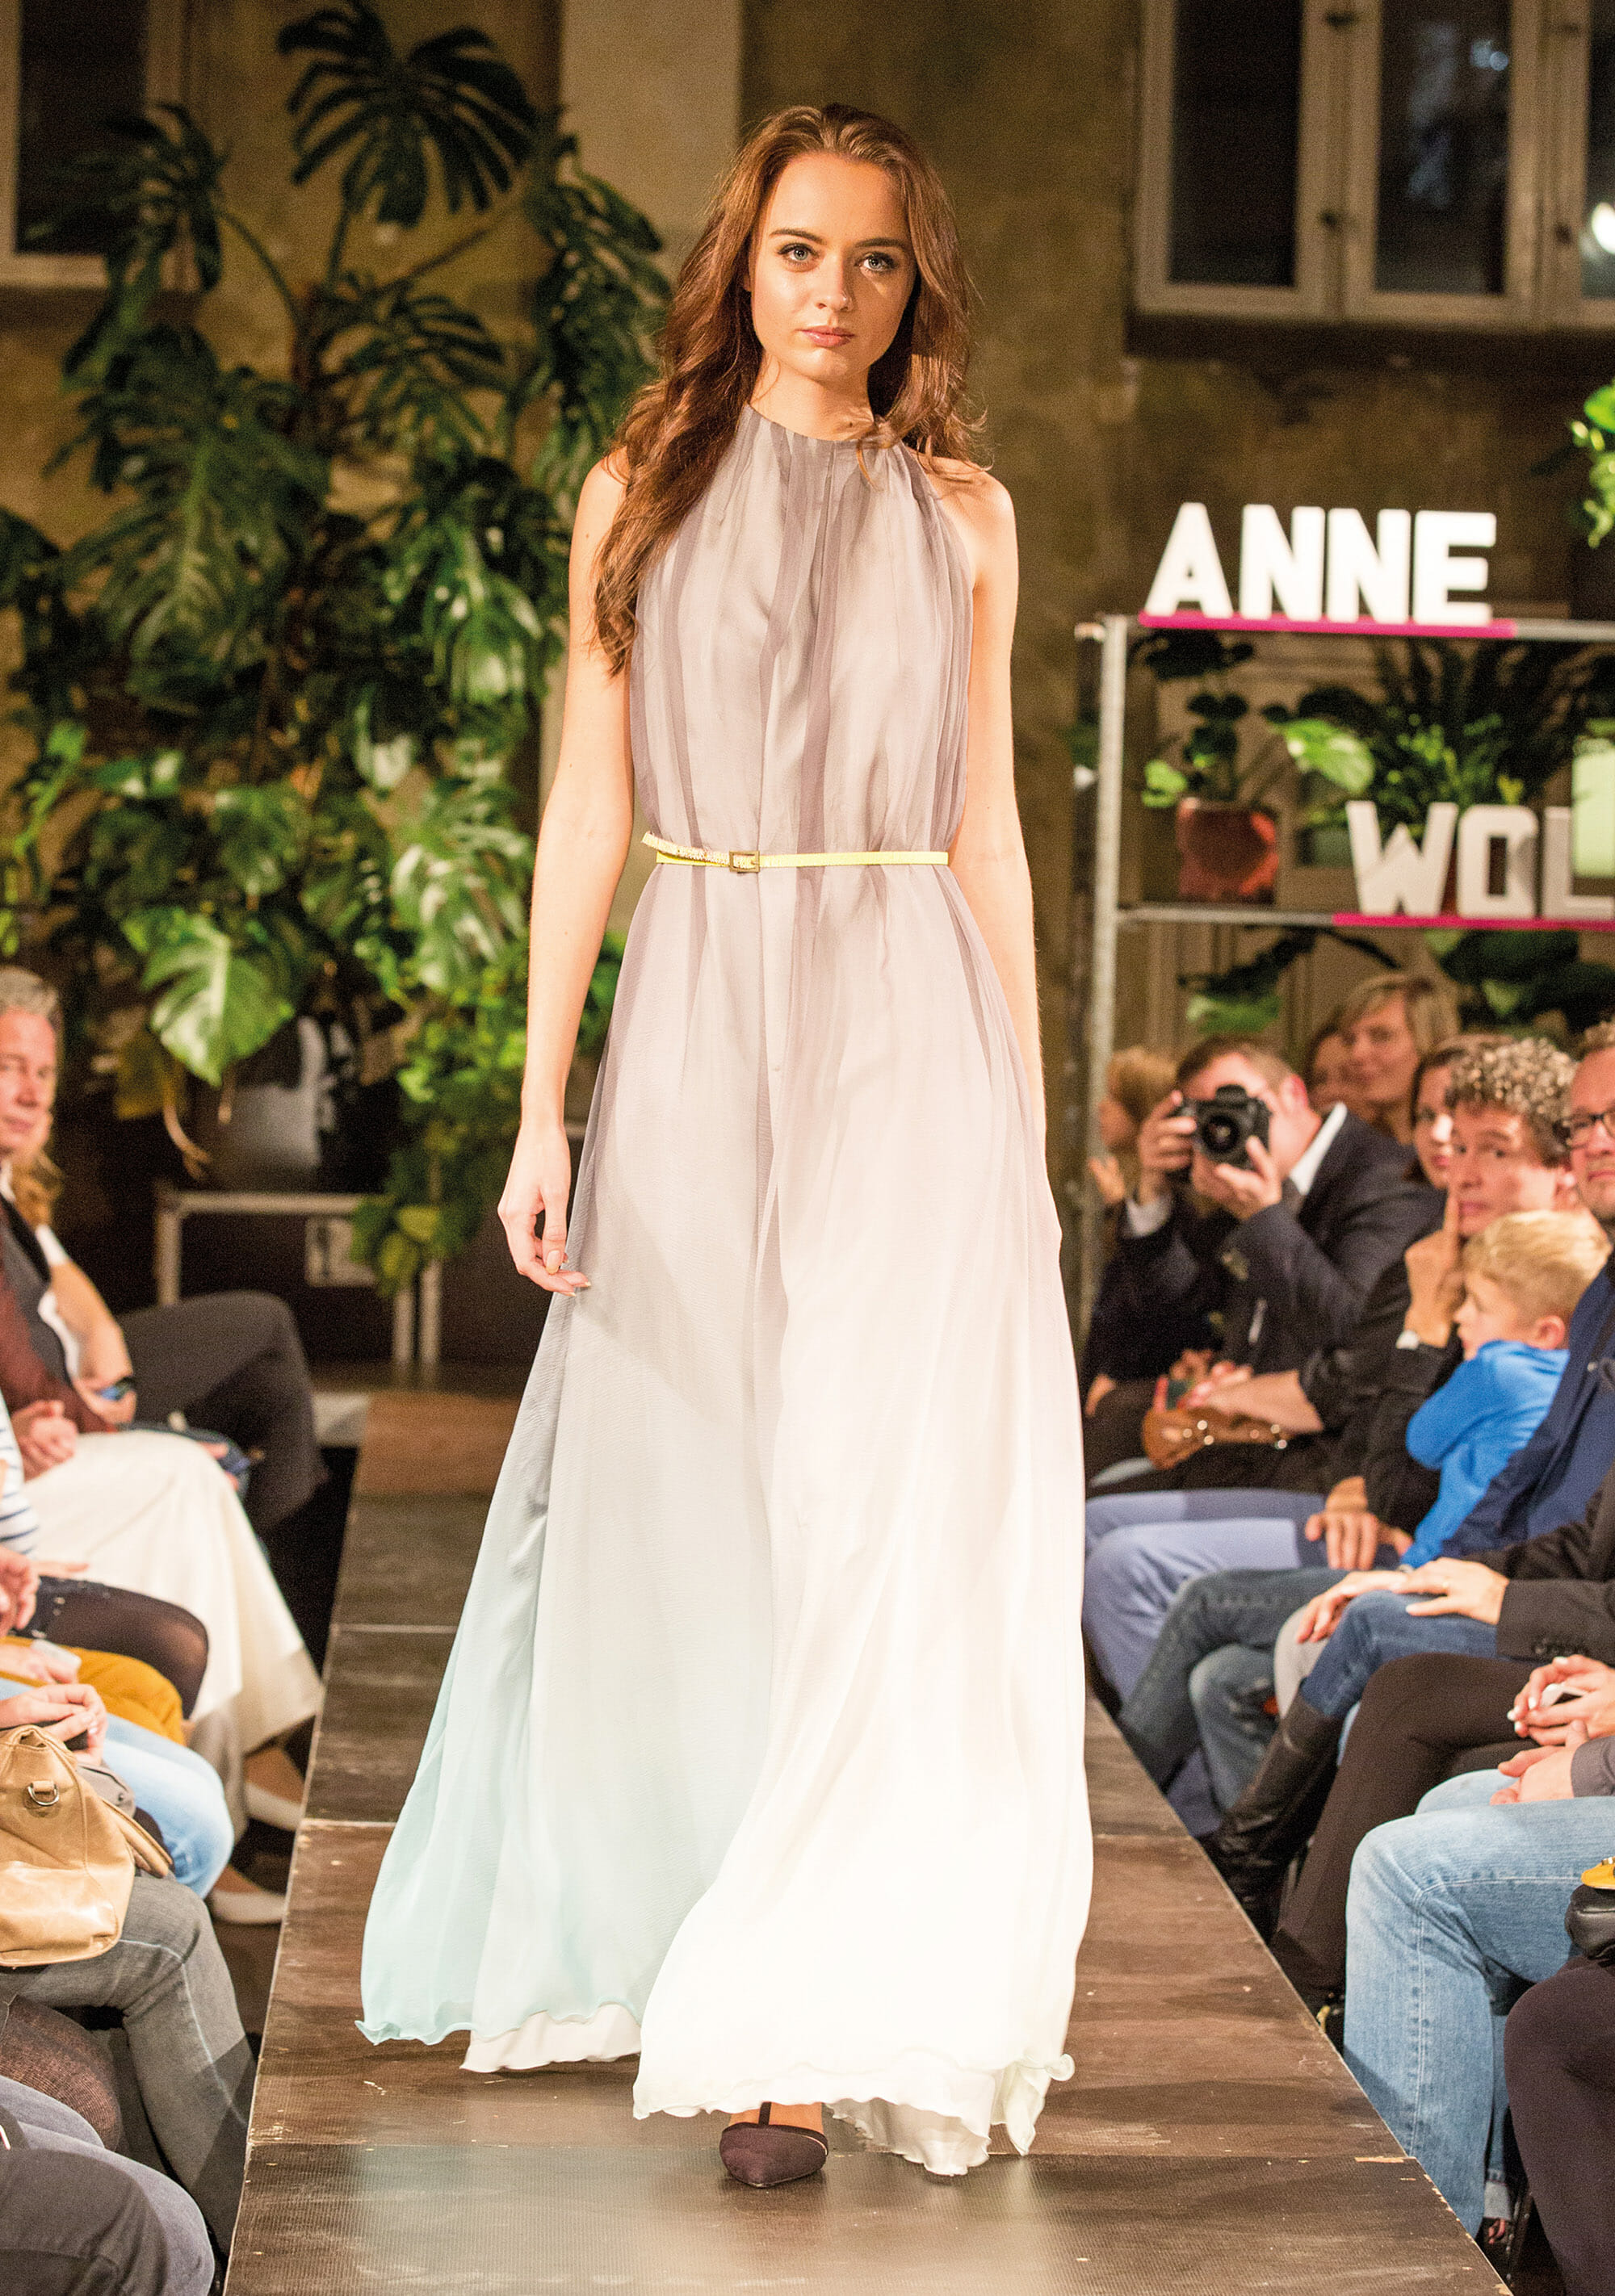 ANNE WOLF Abendkleider Modell: Lana